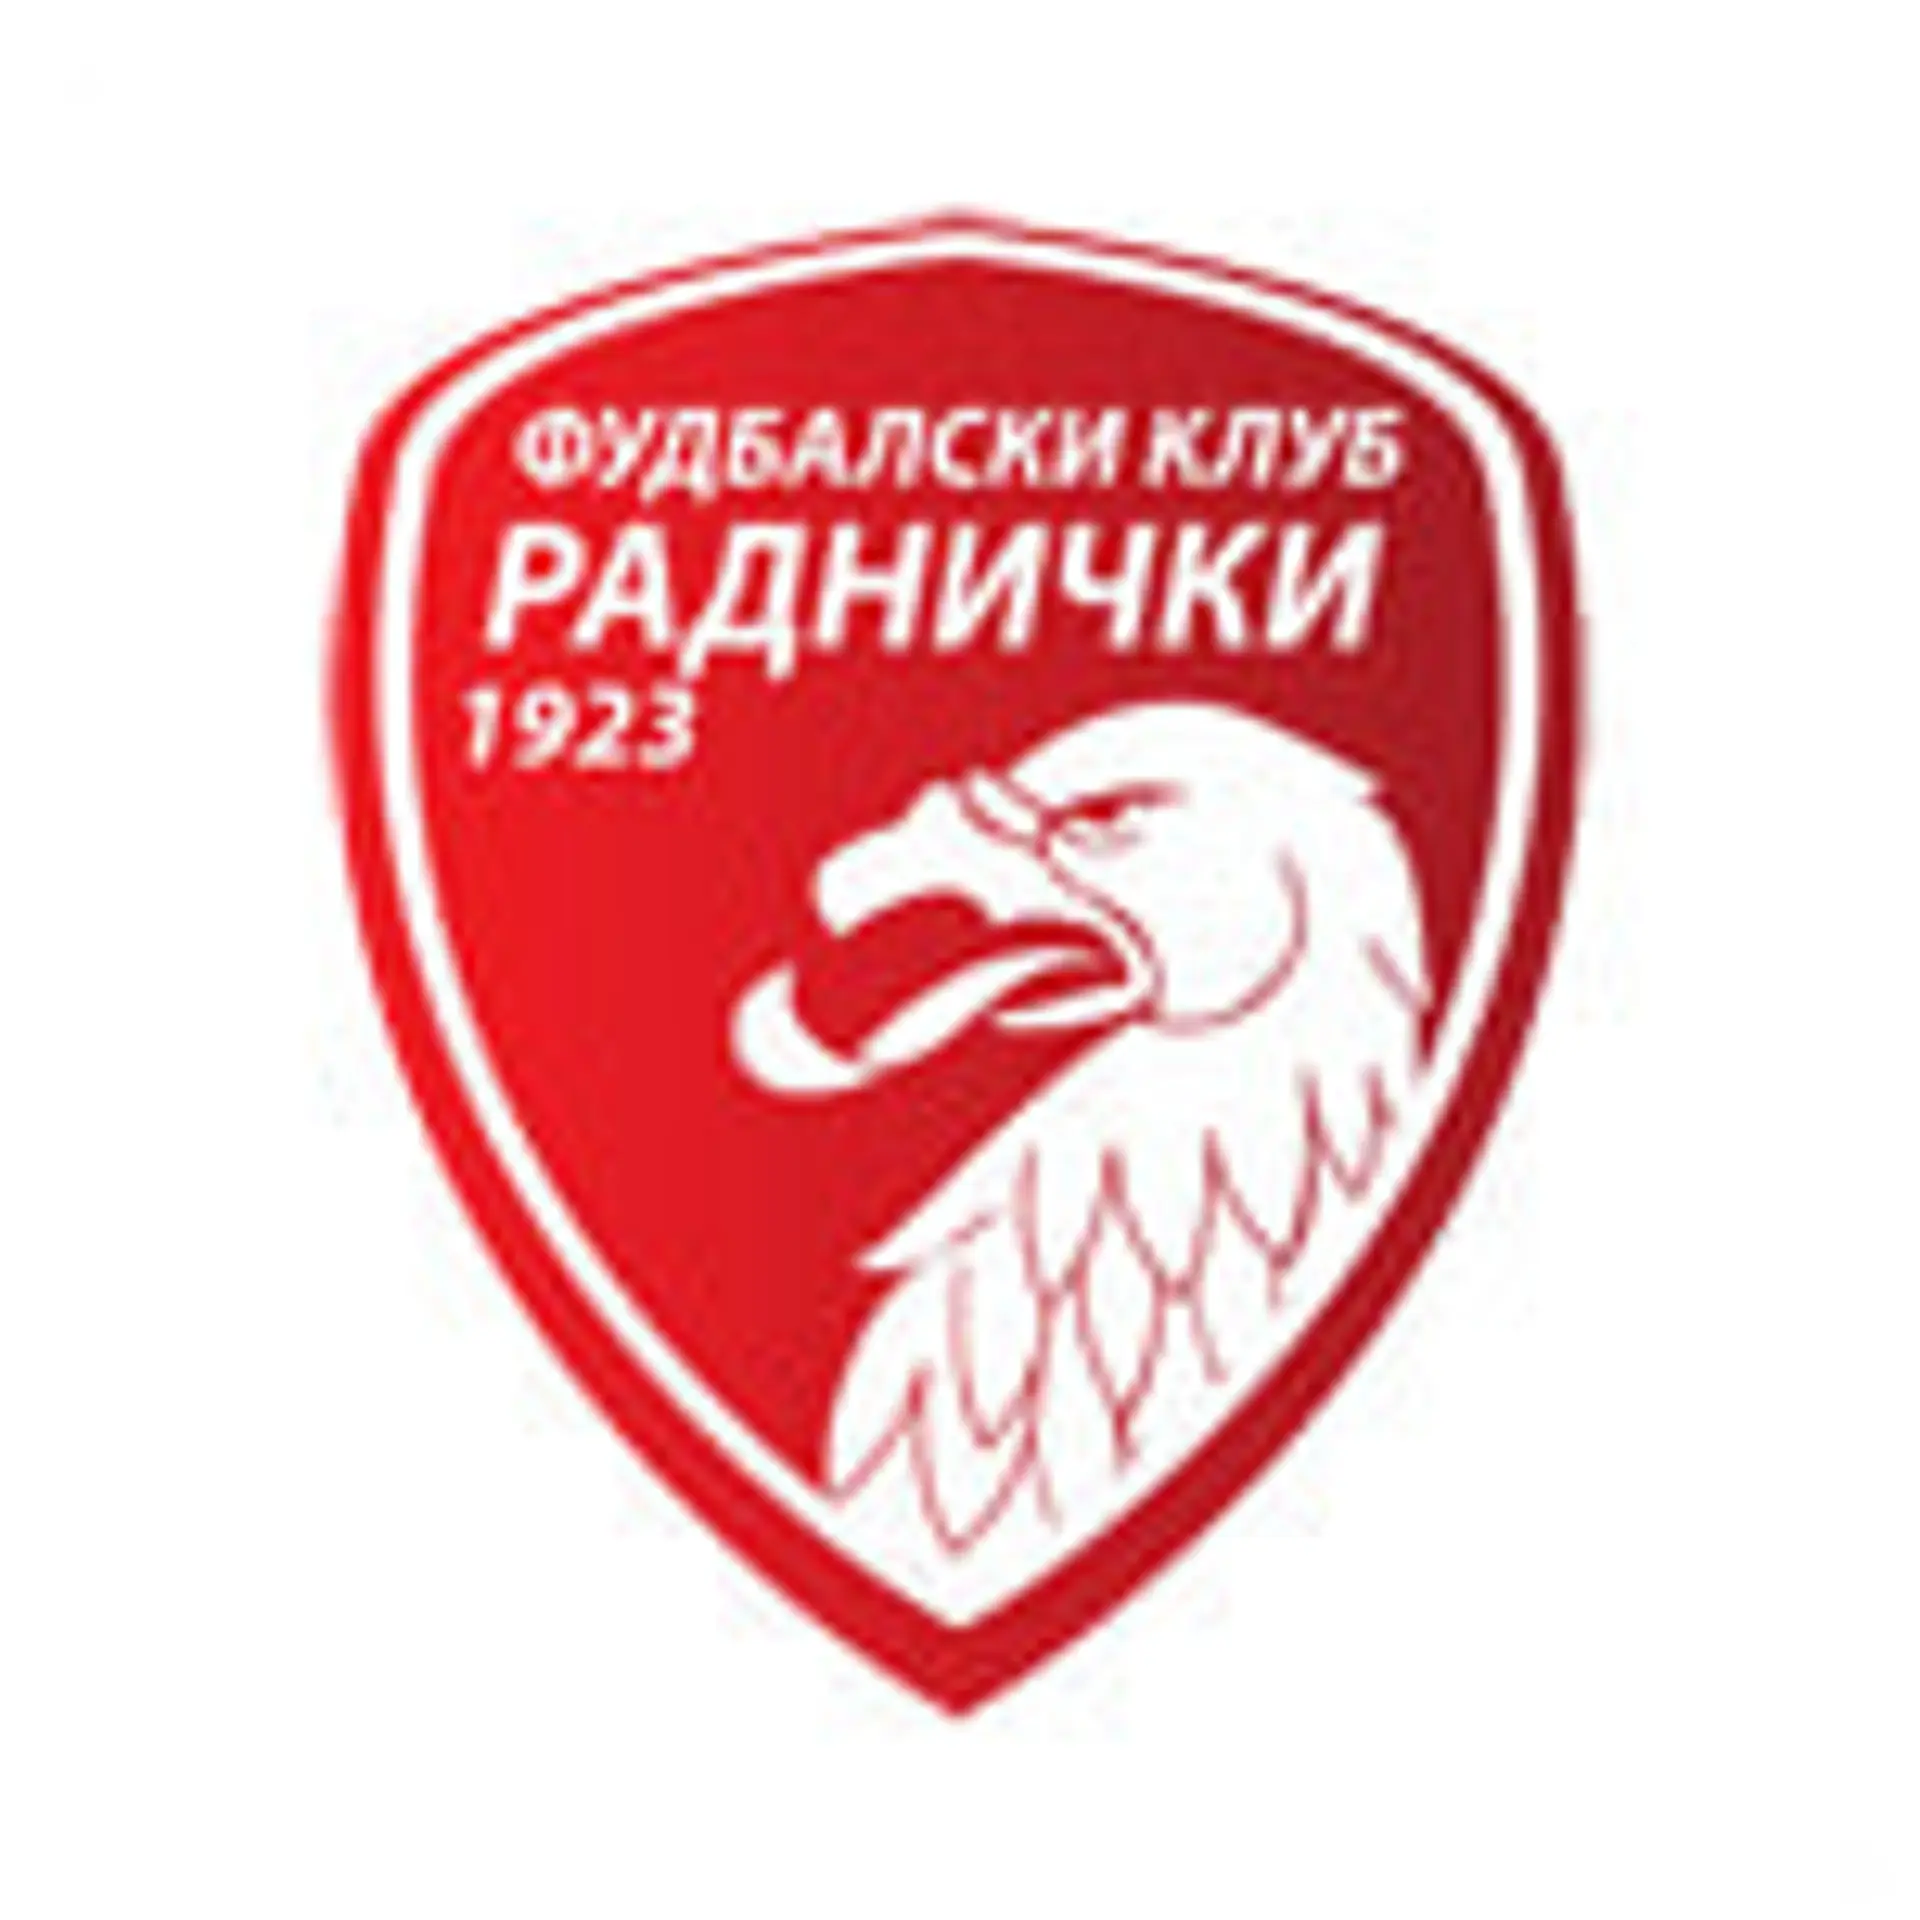 FK Radnički Niš vs FK Železničar Pančevo live score, H2H and